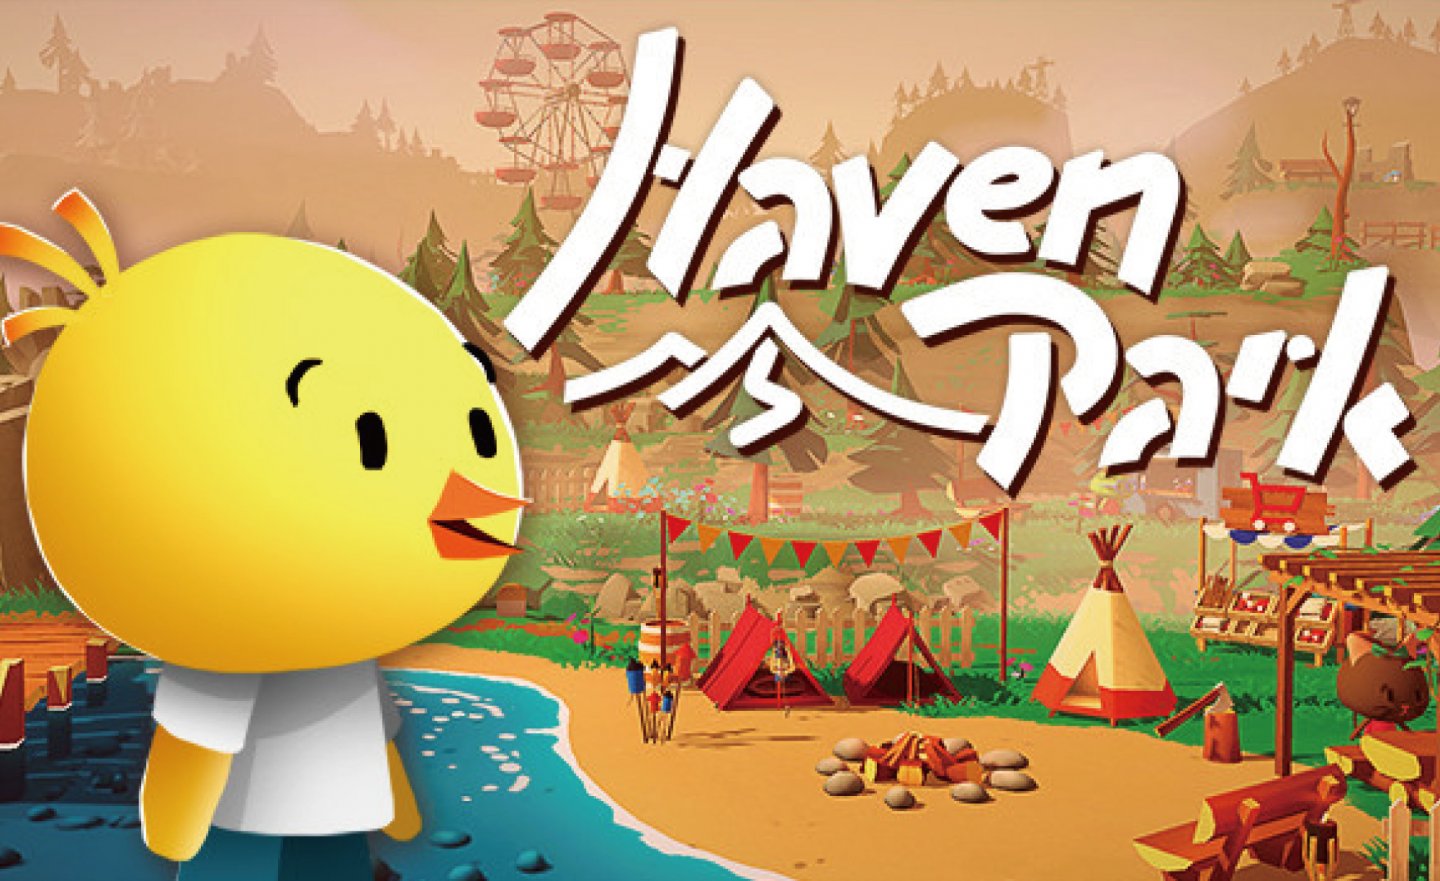 【限時免費】GOG 平台放送療癒系冒險遊戲《Haven Park》，2023 年 1 月 23 日 22:00 截止